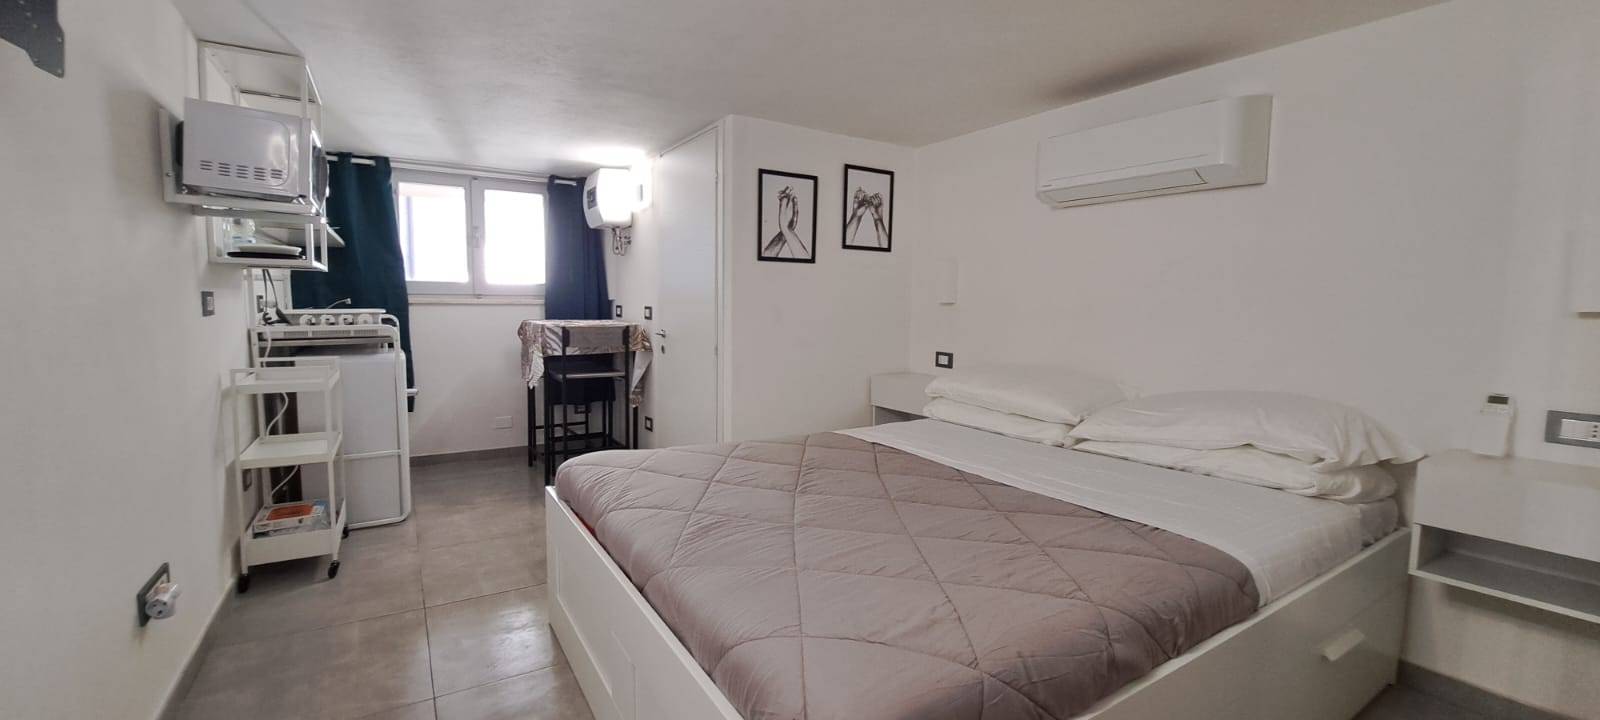 Appartamento in vendita a Rimini, 1 locali, zona Località: MarinaCentro, prezzo € 95.000 | PortaleAgenzieImmobiliari.it